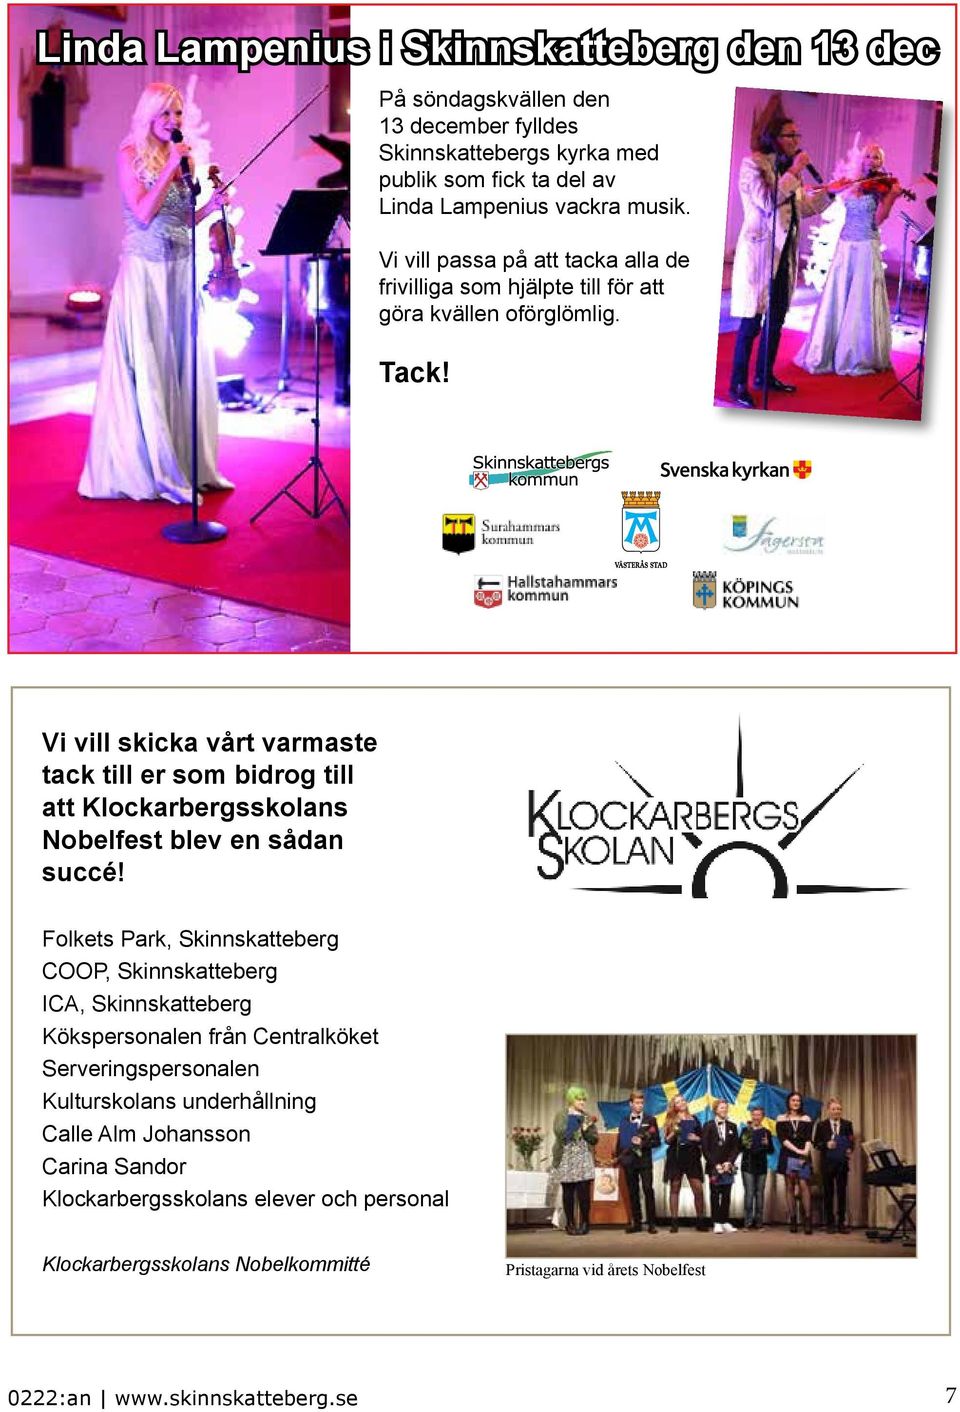 Vi vill skicka vårt varmaste tack till er som bidrog till att Klockarbergsskolans Nobelfest blev en sådan succé!